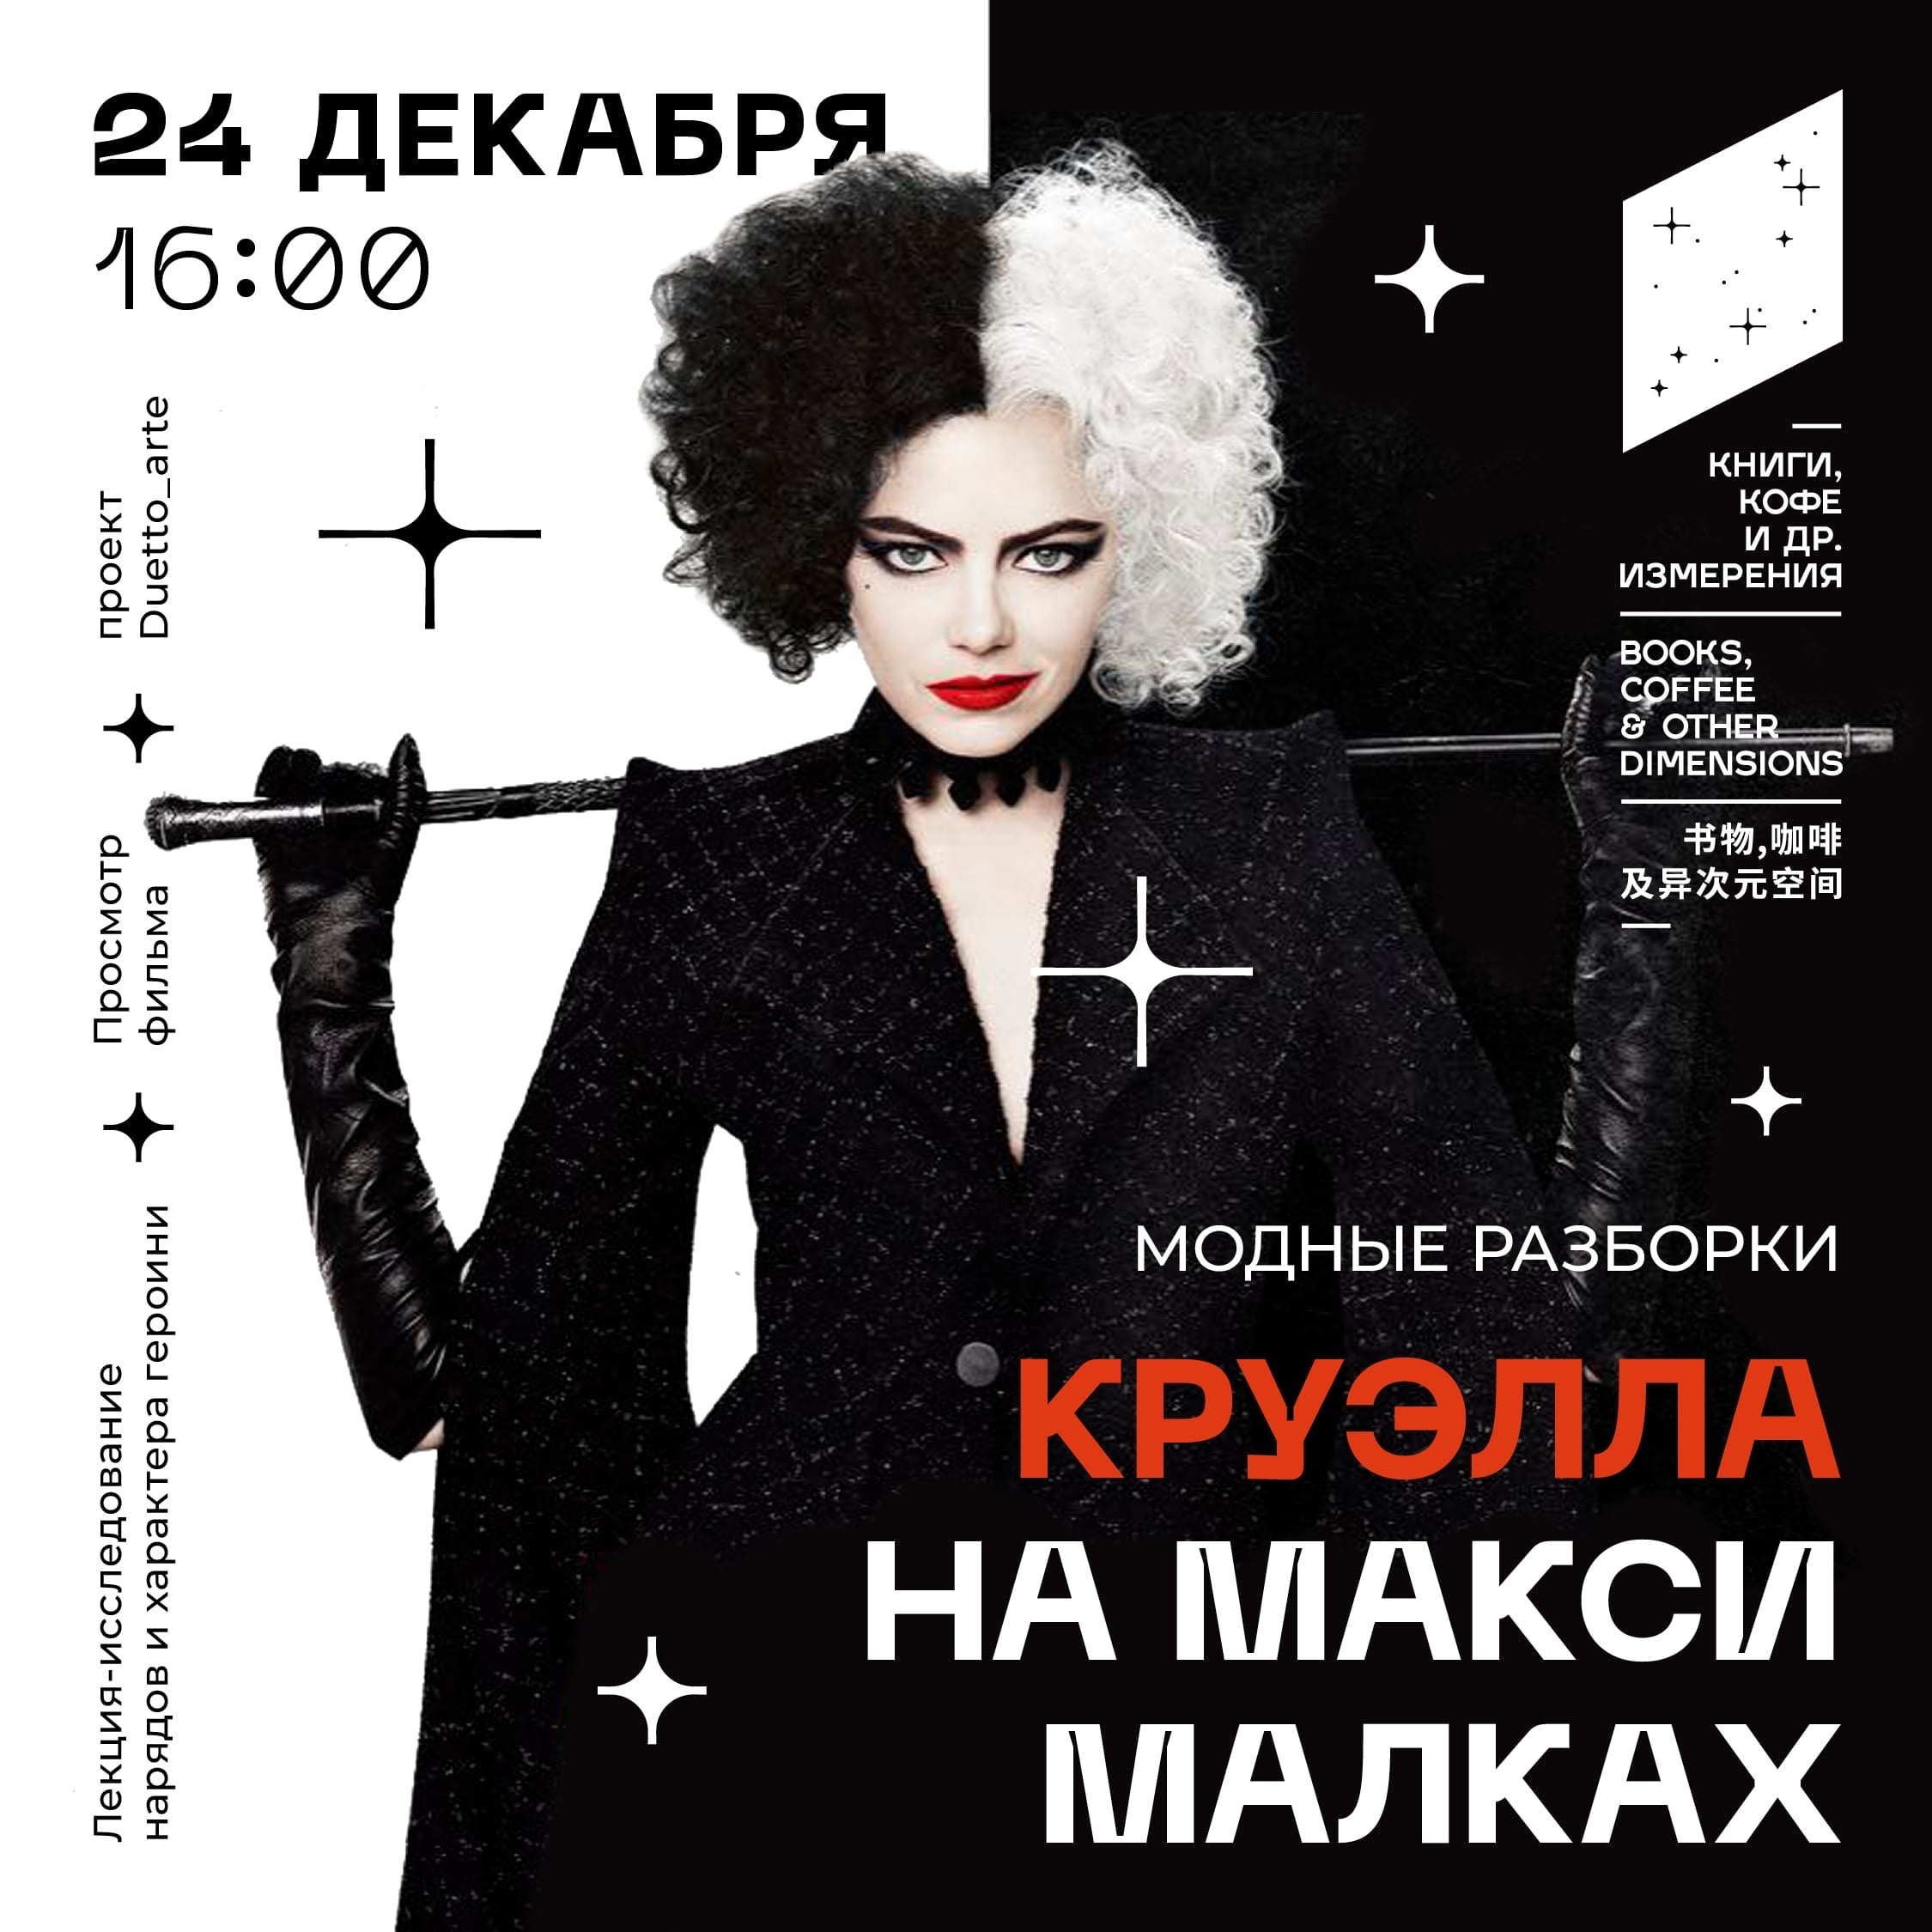 «Модные разборки» со стилистом Ириной Святской и искусствоведом Еленой Бызовой